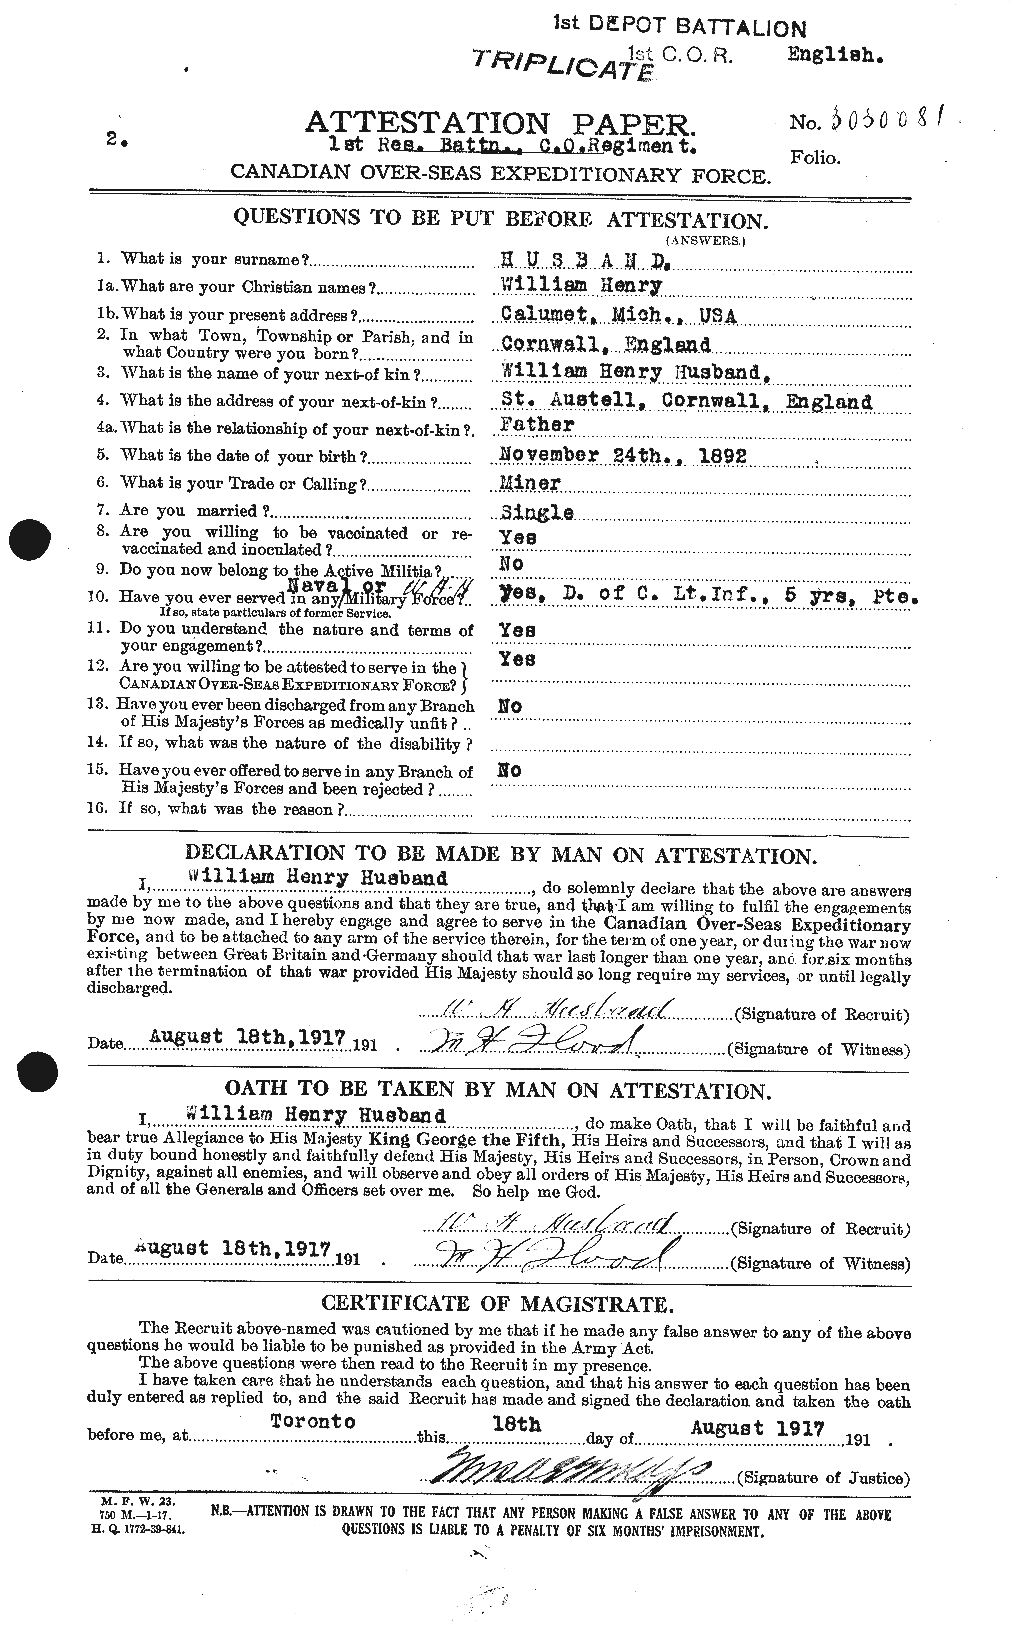 Dossiers du Personnel de la Première Guerre mondiale - CEC 405255a